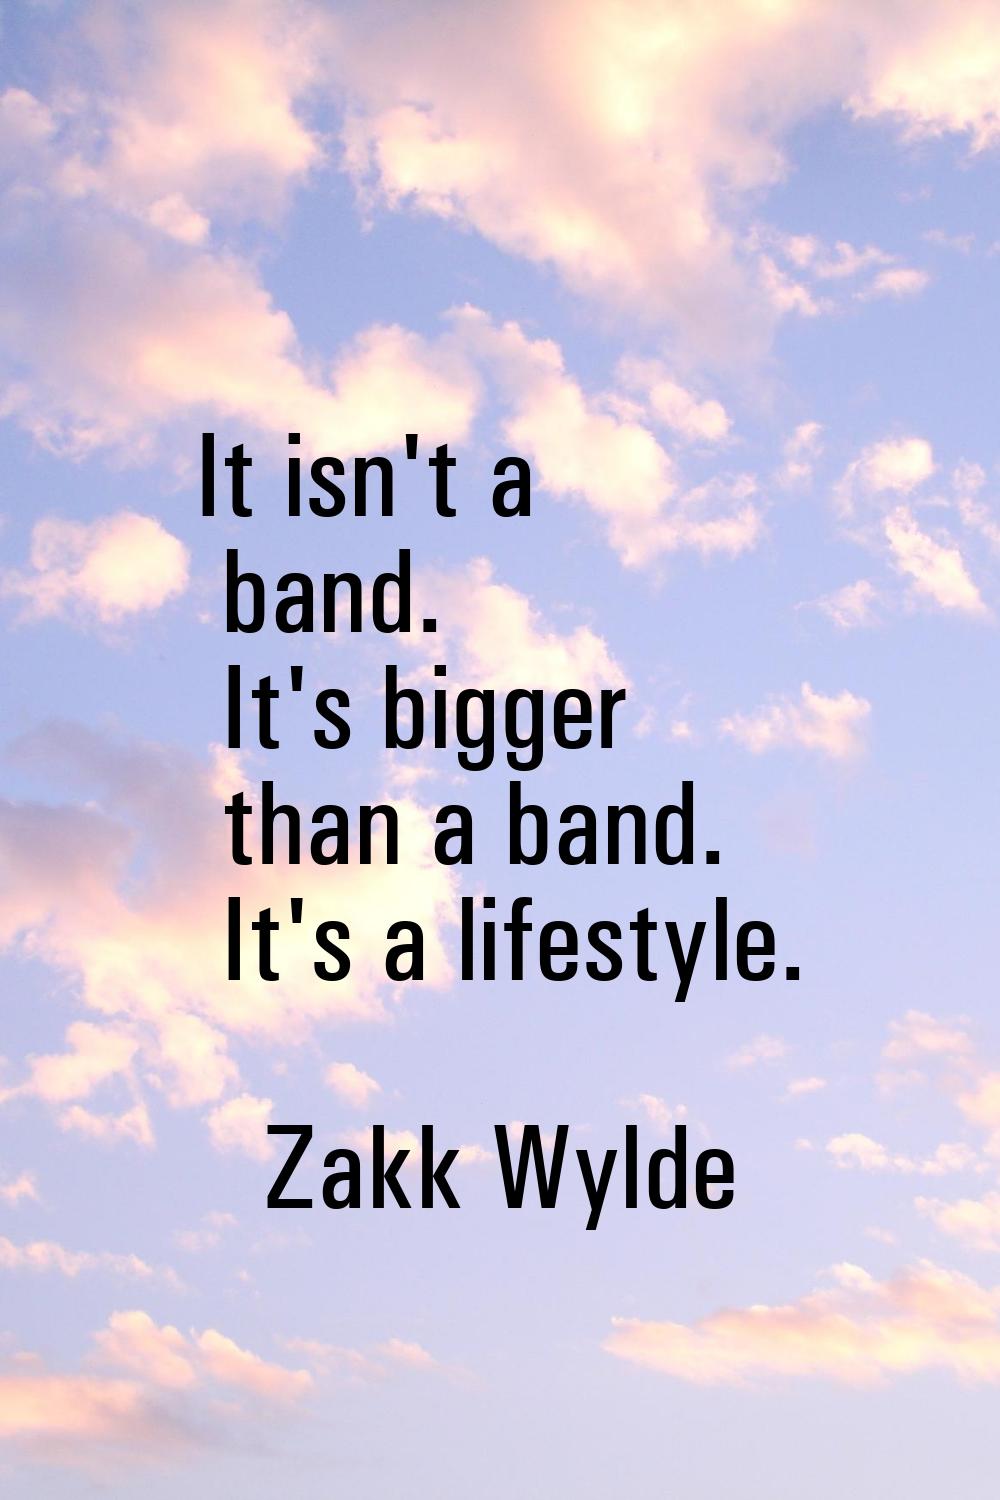 It isn't a band. It's bigger than a band. It's a lifestyle.